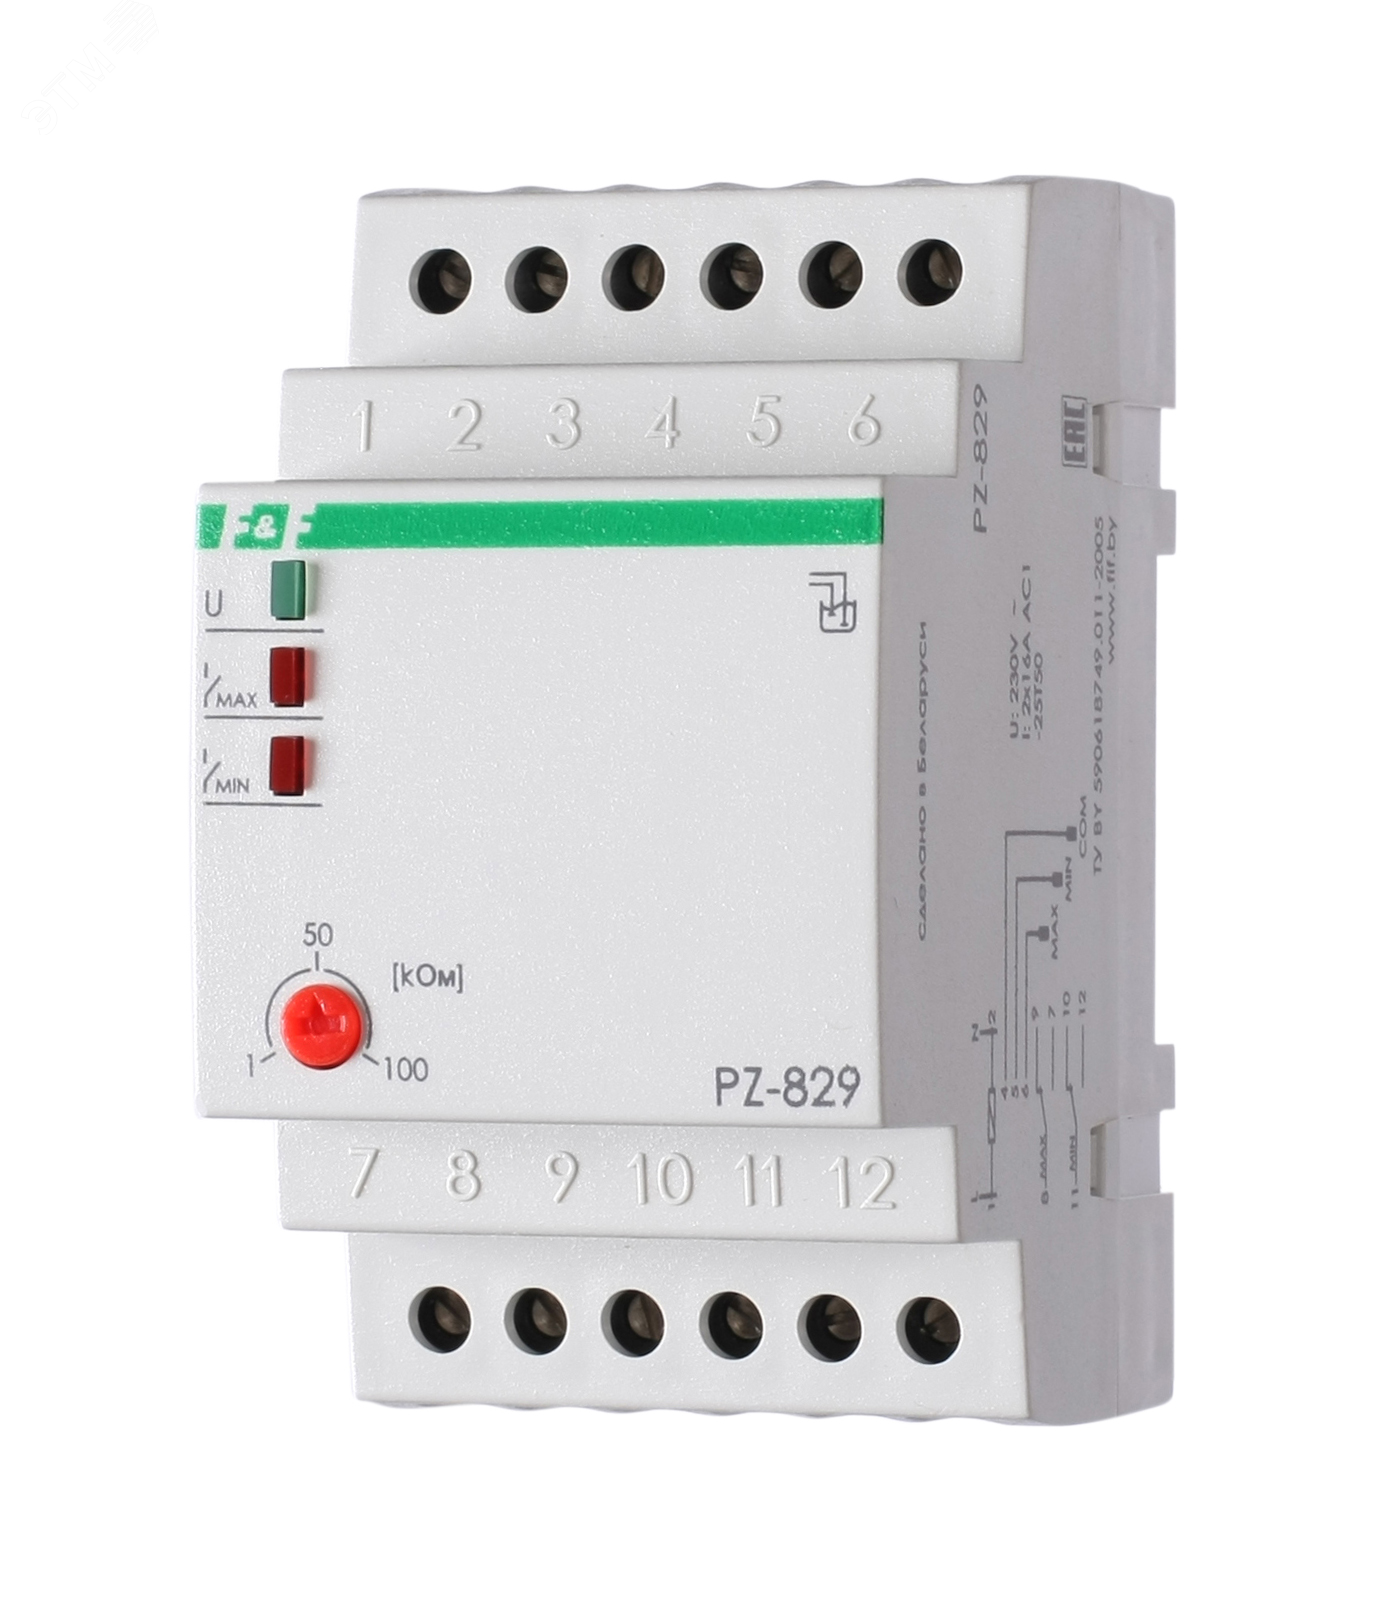 Реле контроля PZ-829 уровня жидкости без датчиков EA08.001.007 Евроавтоматика F&F